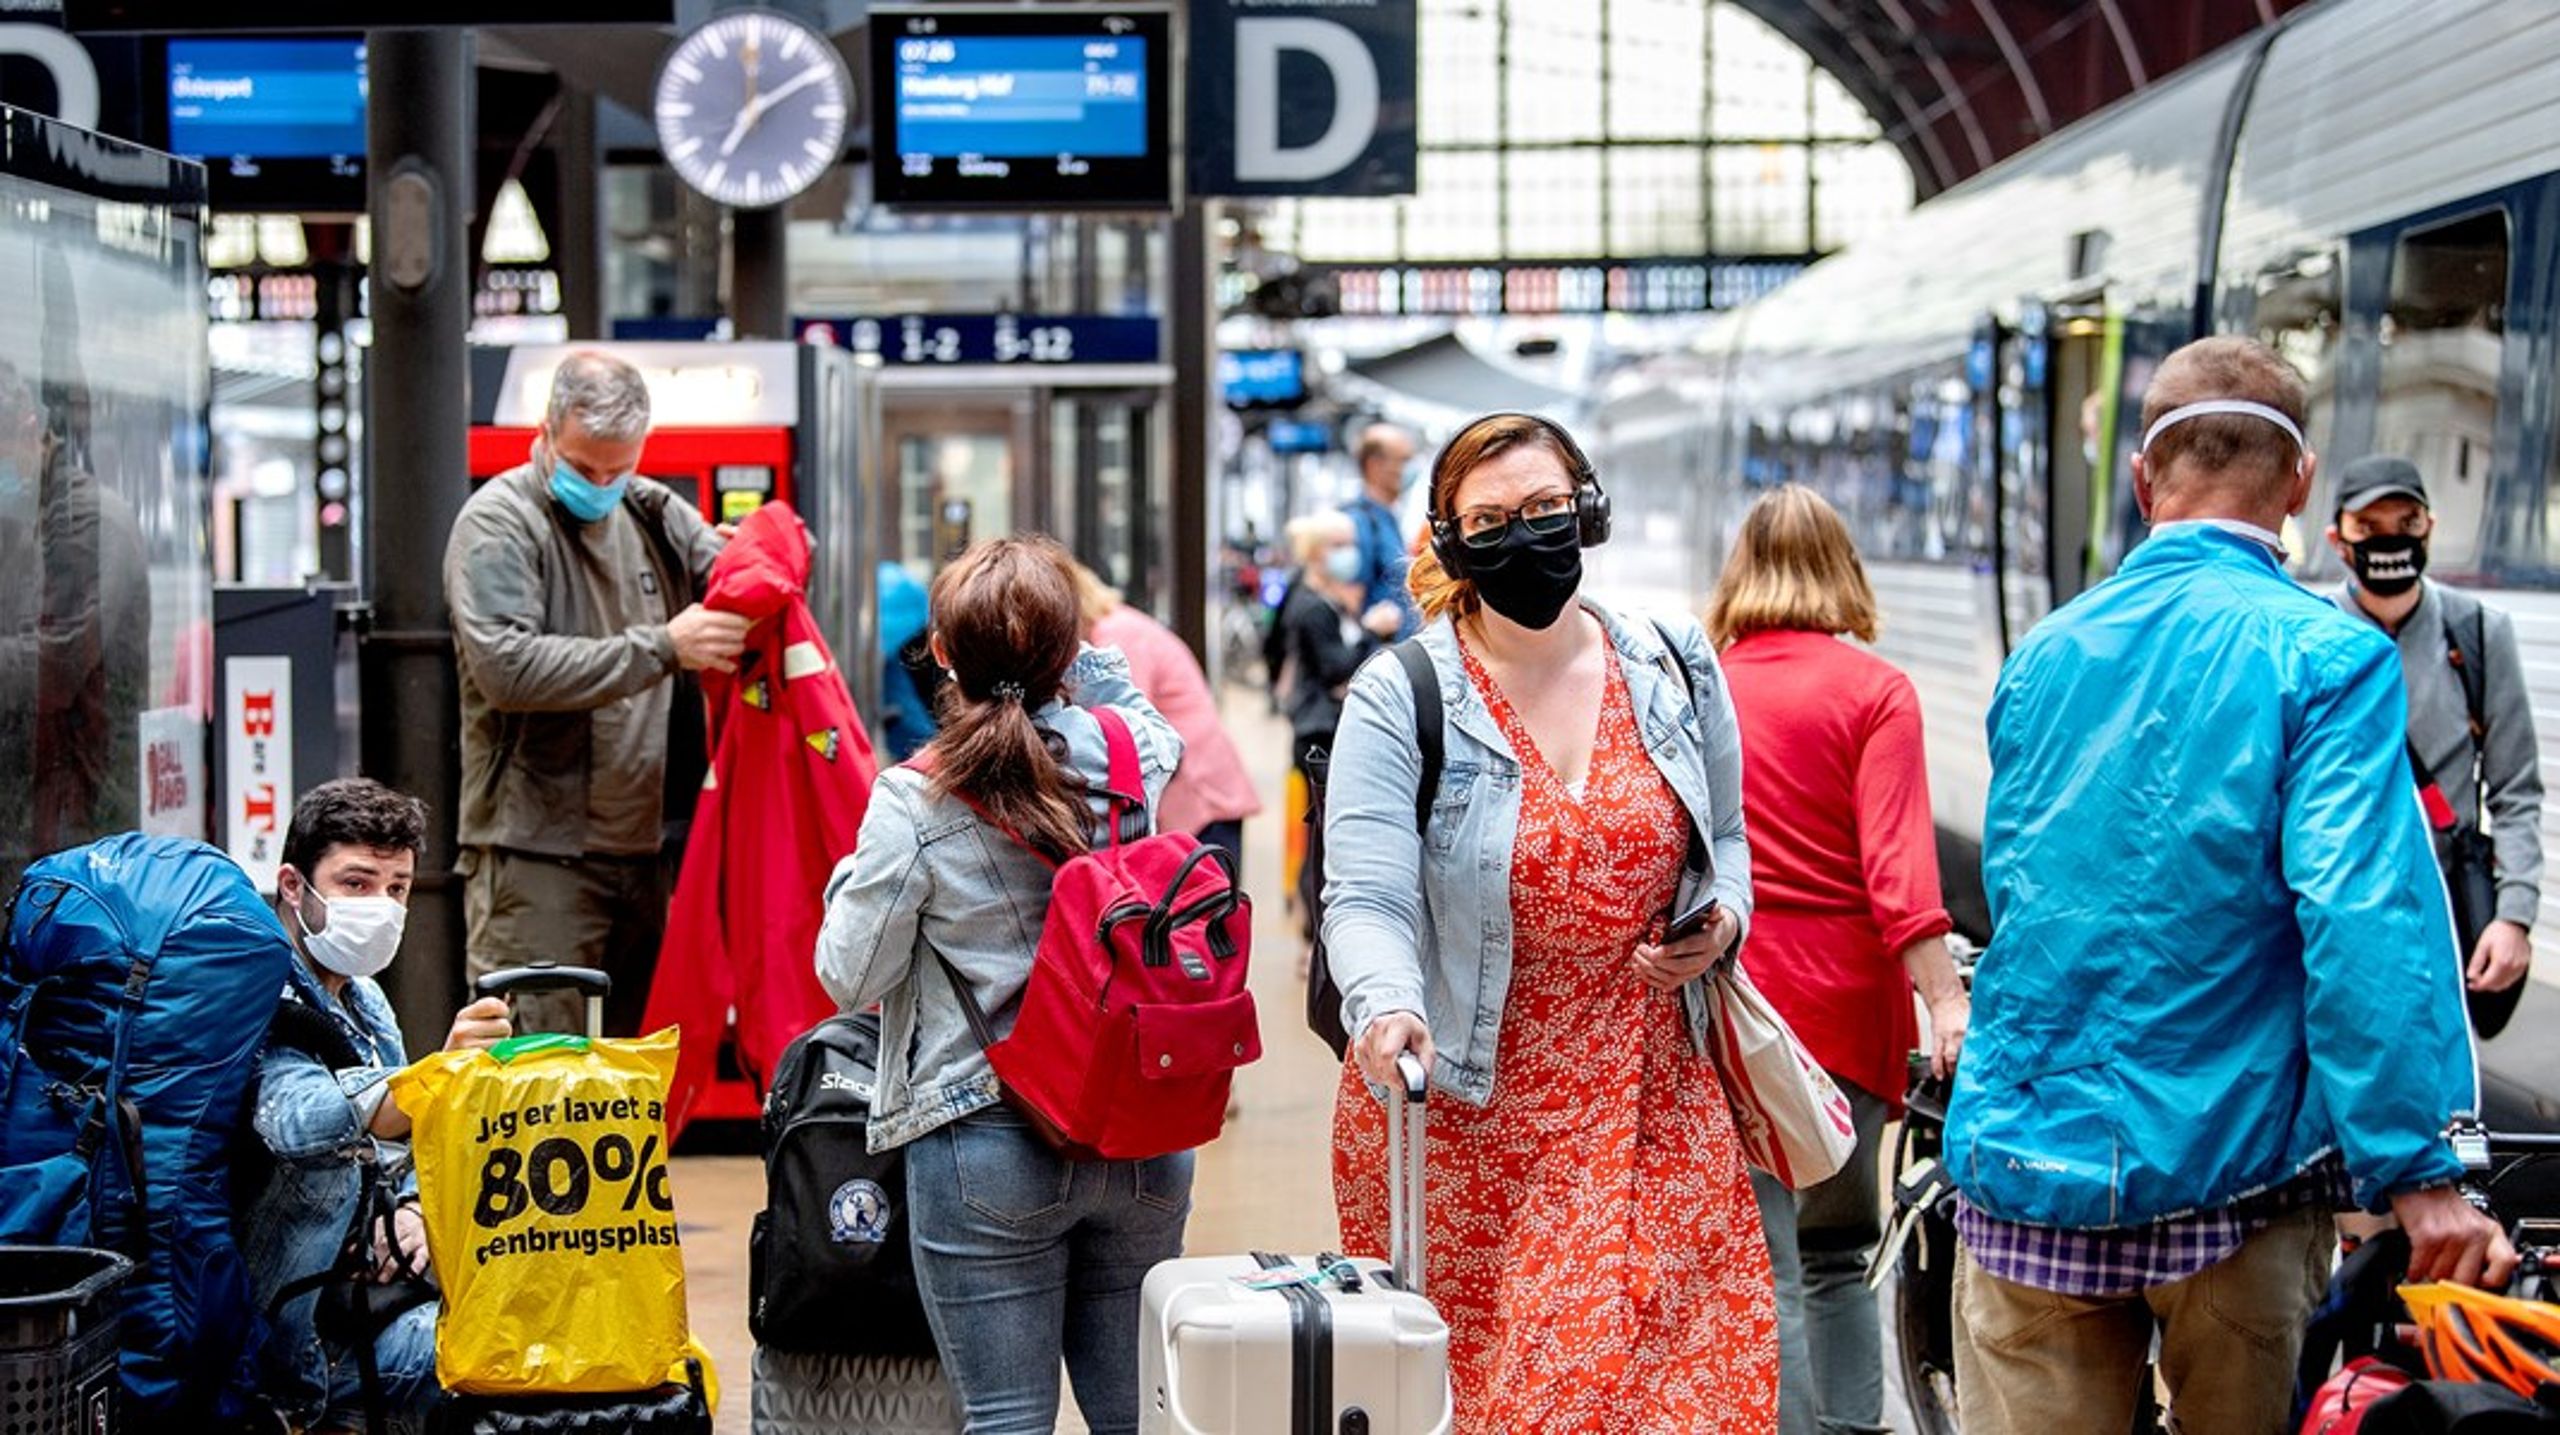 Selvom togselskaberne overordnet set er blevet bedre til at informere om rejsetidsgarantien på stationerne, er passagerernes generelle kendskab til og brug af rejsetidsgarantien forsat lavt, skriver Mads Reinholdt.